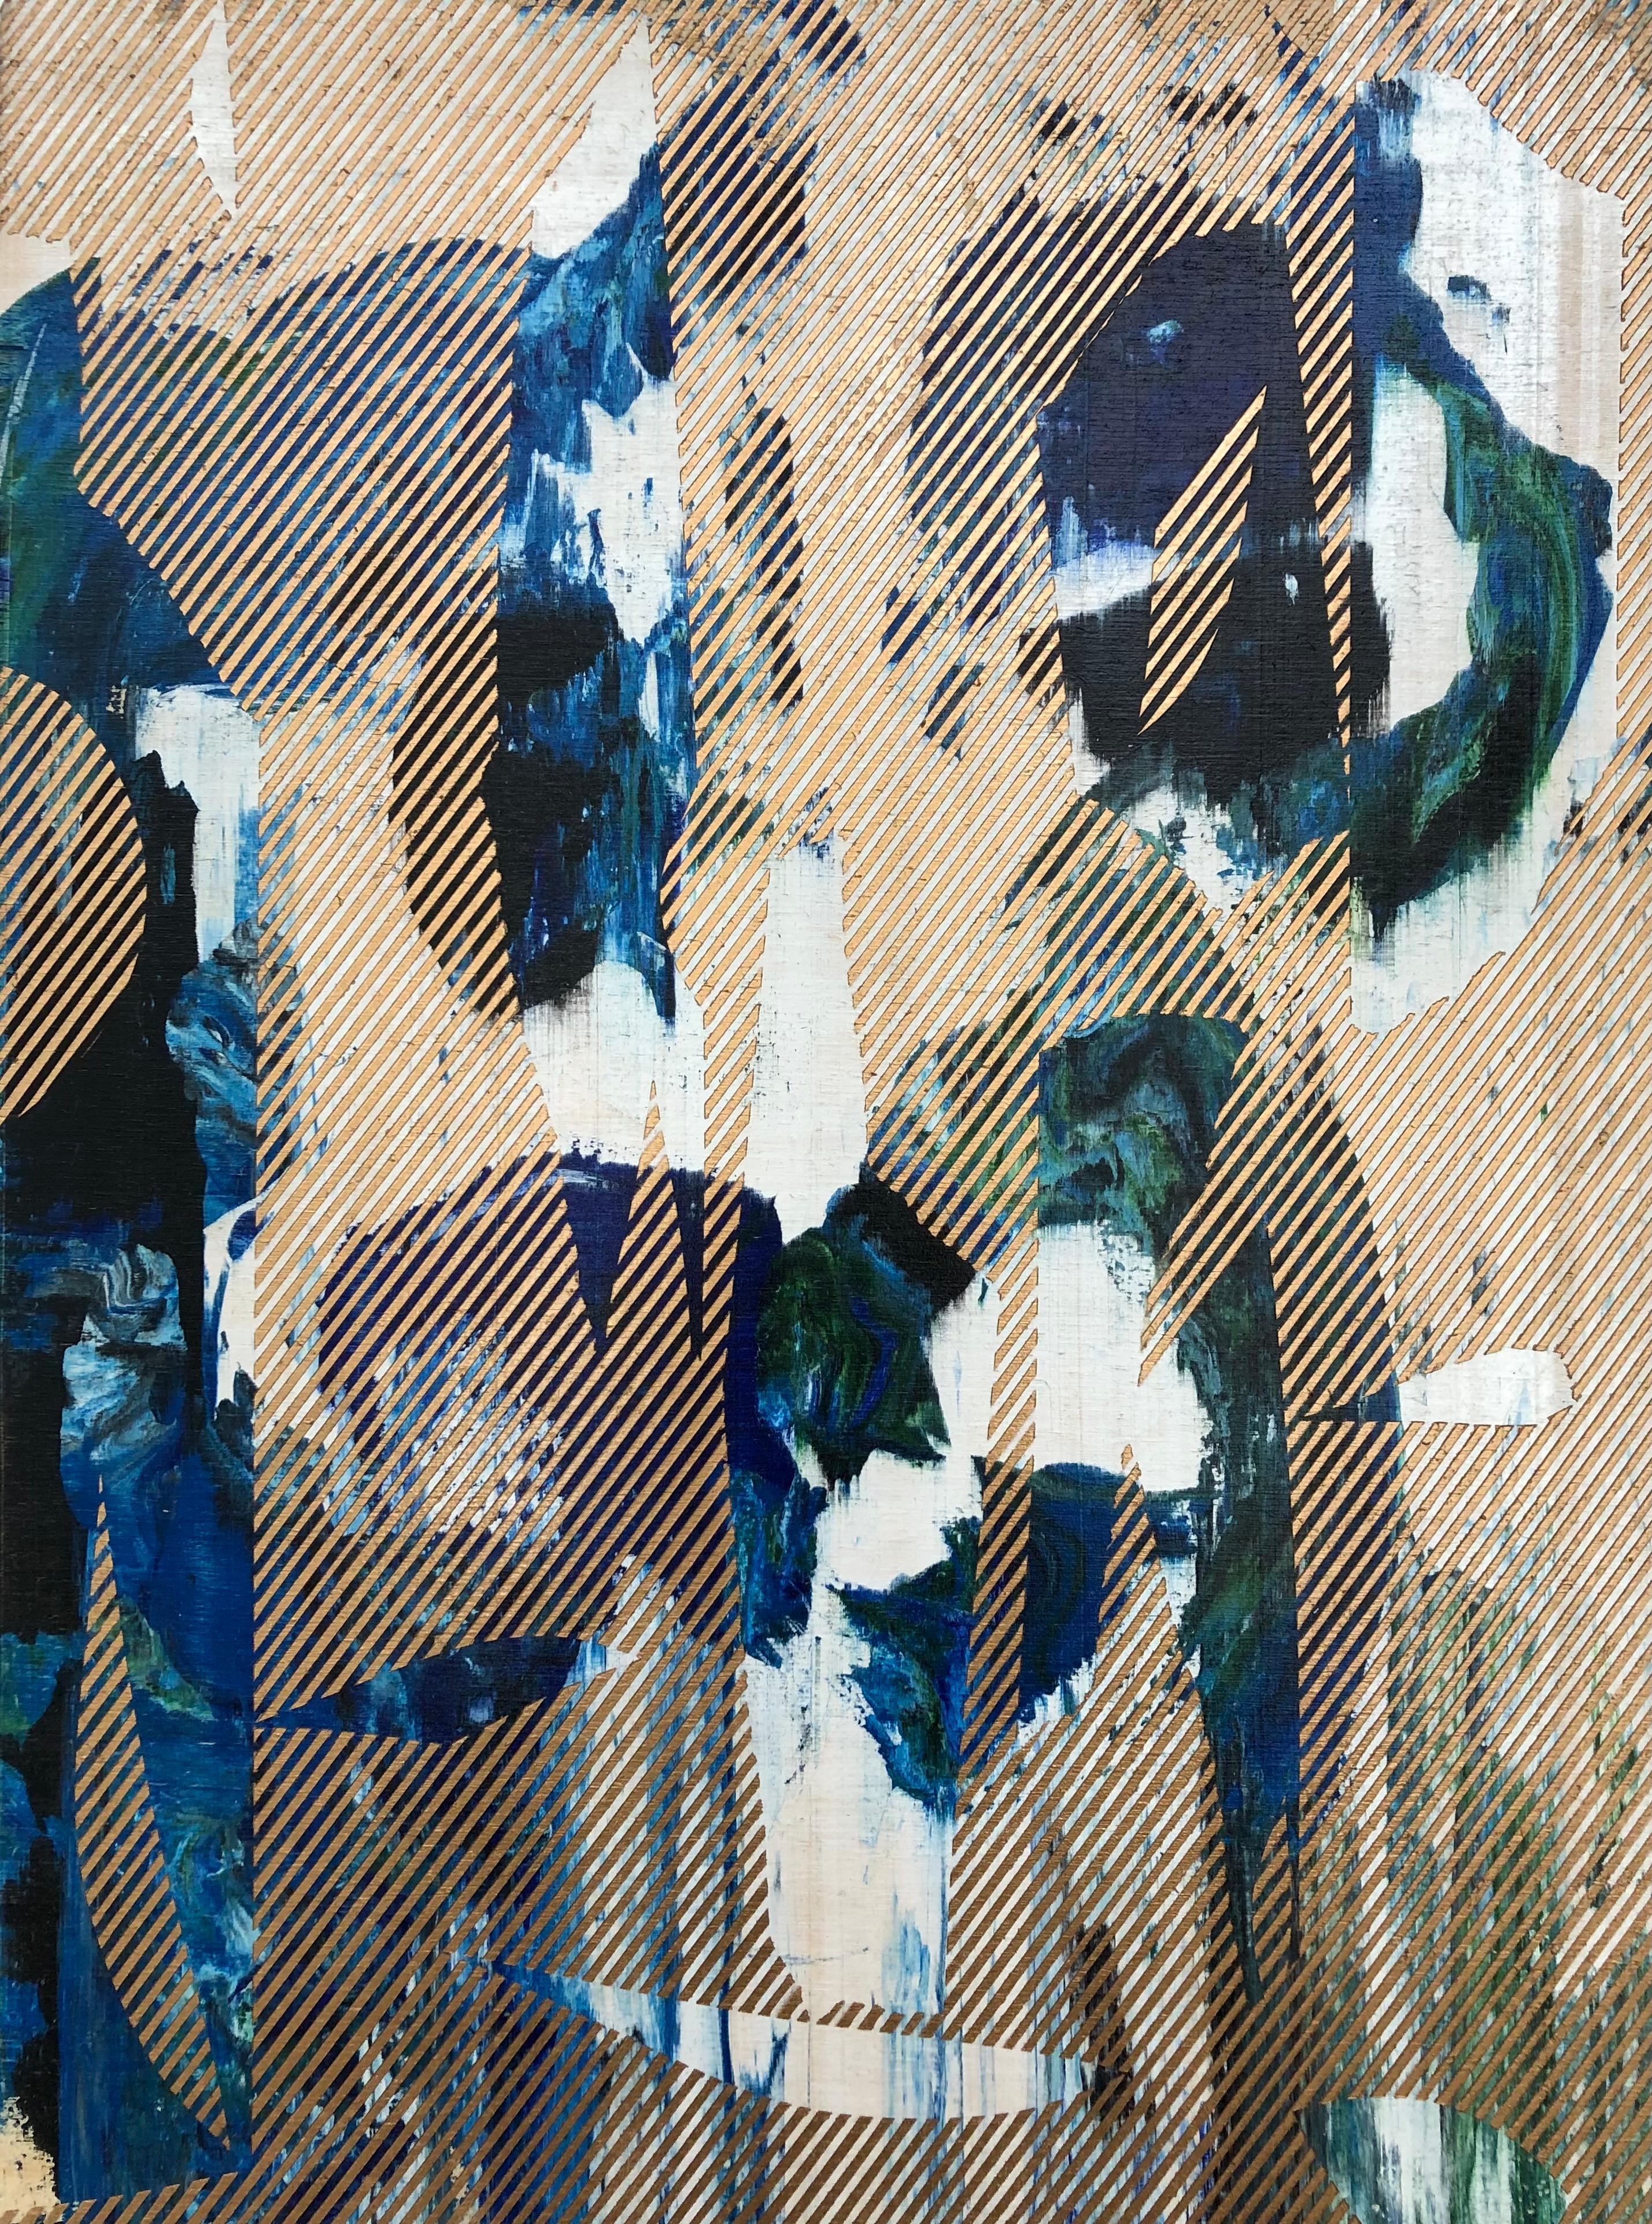 Mangata 31 (peinture à petite échelle à grille dorée en bois de fleurs abstraite op art) - Mixed Media Art de Melisa Taylor Metzger